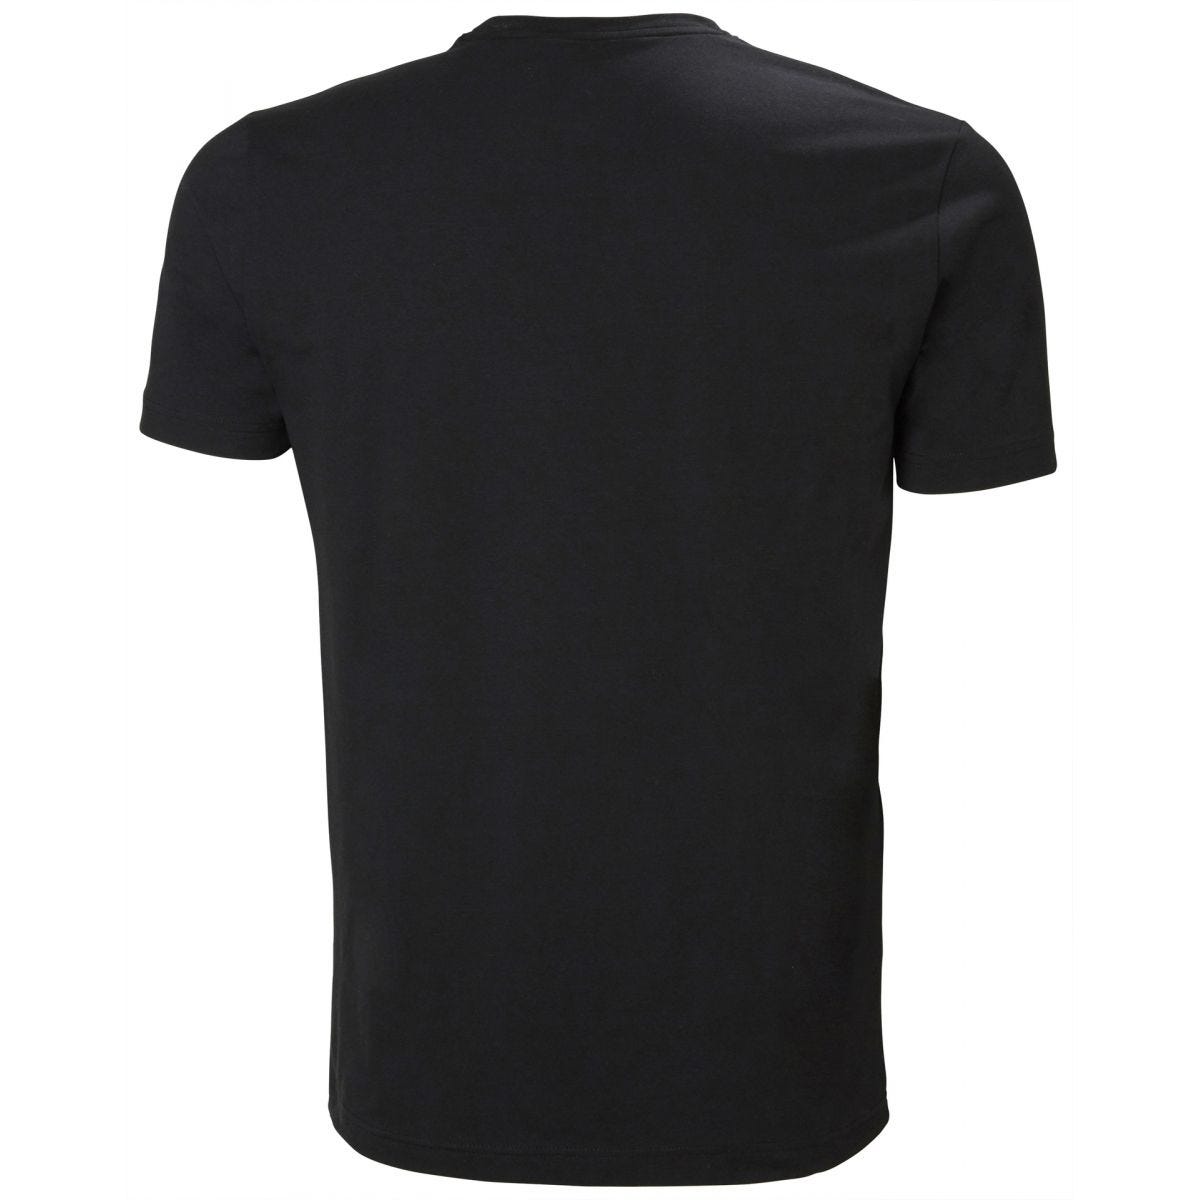 Tee-shirt Kensington Noir - Helly Hansen - Taille S 1